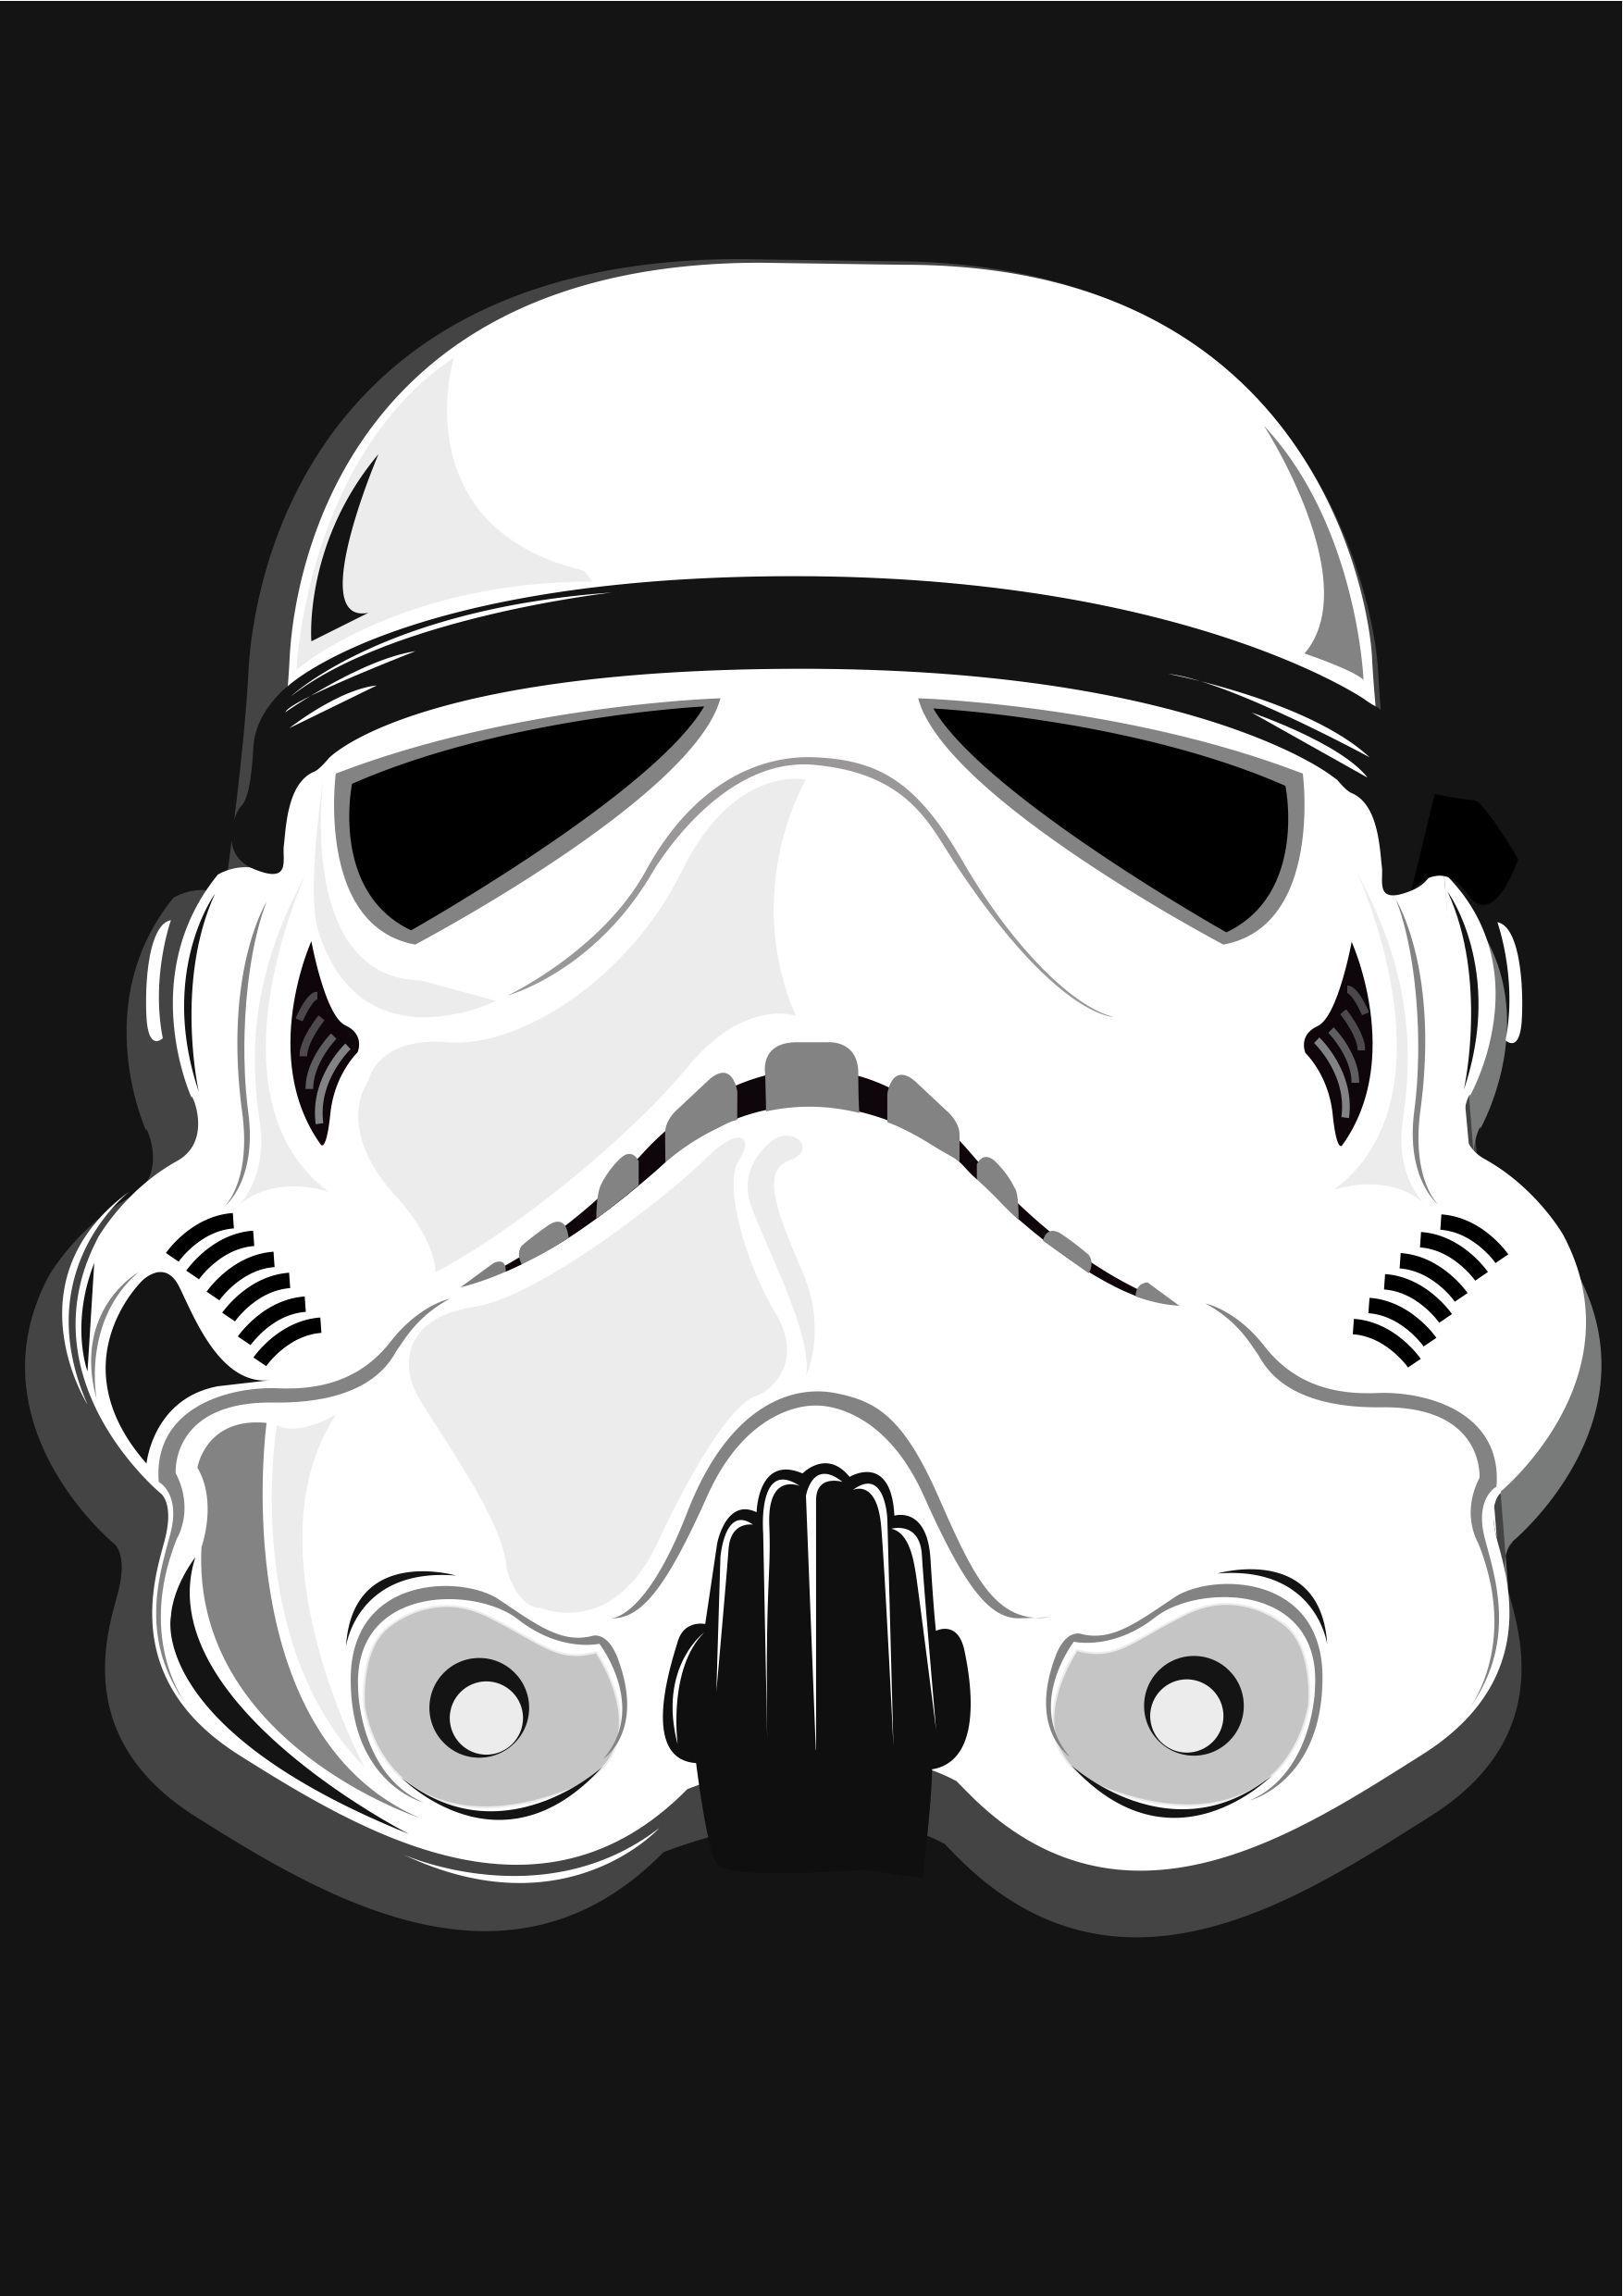 Stormtrooper Helmet Wallpapers - Top Free Stormtrooper Helmet